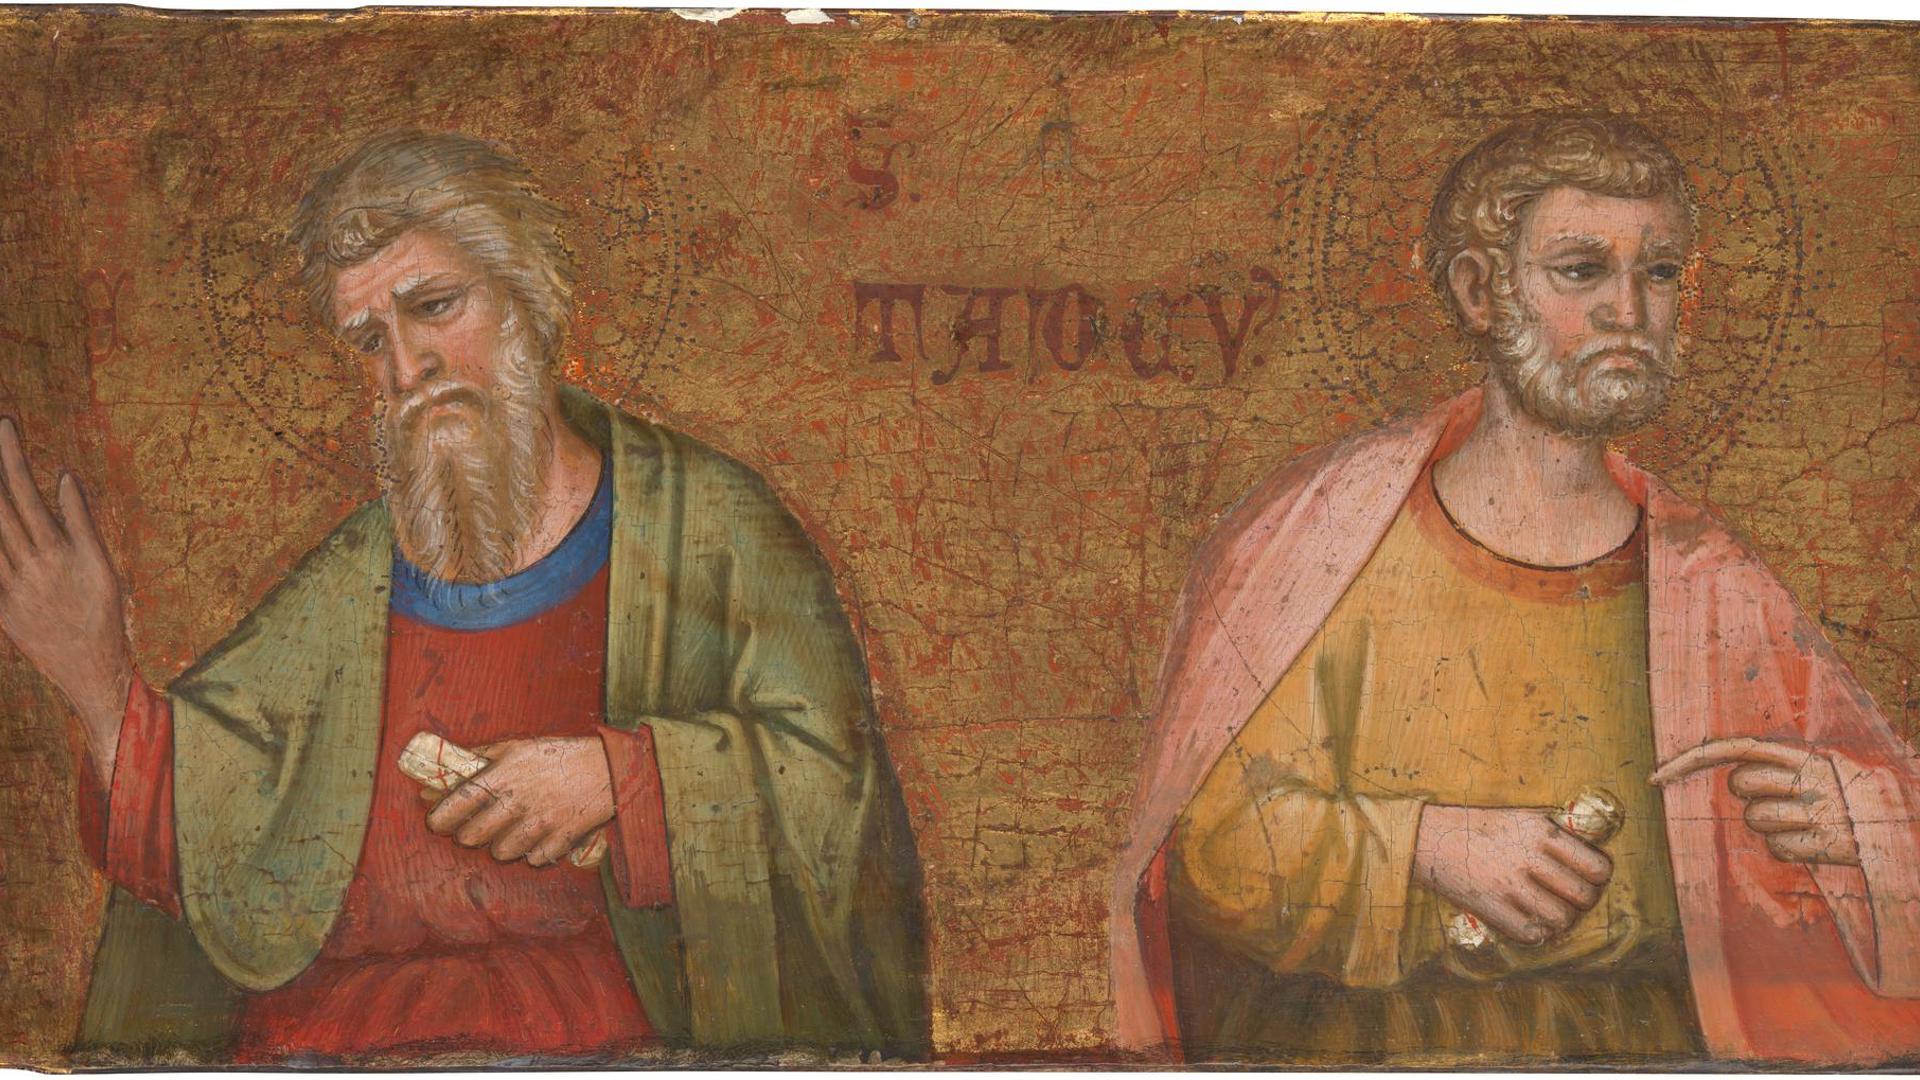 Two Apostles (Saints Andrew and Thaddeus) by Dalmatian/Venetian